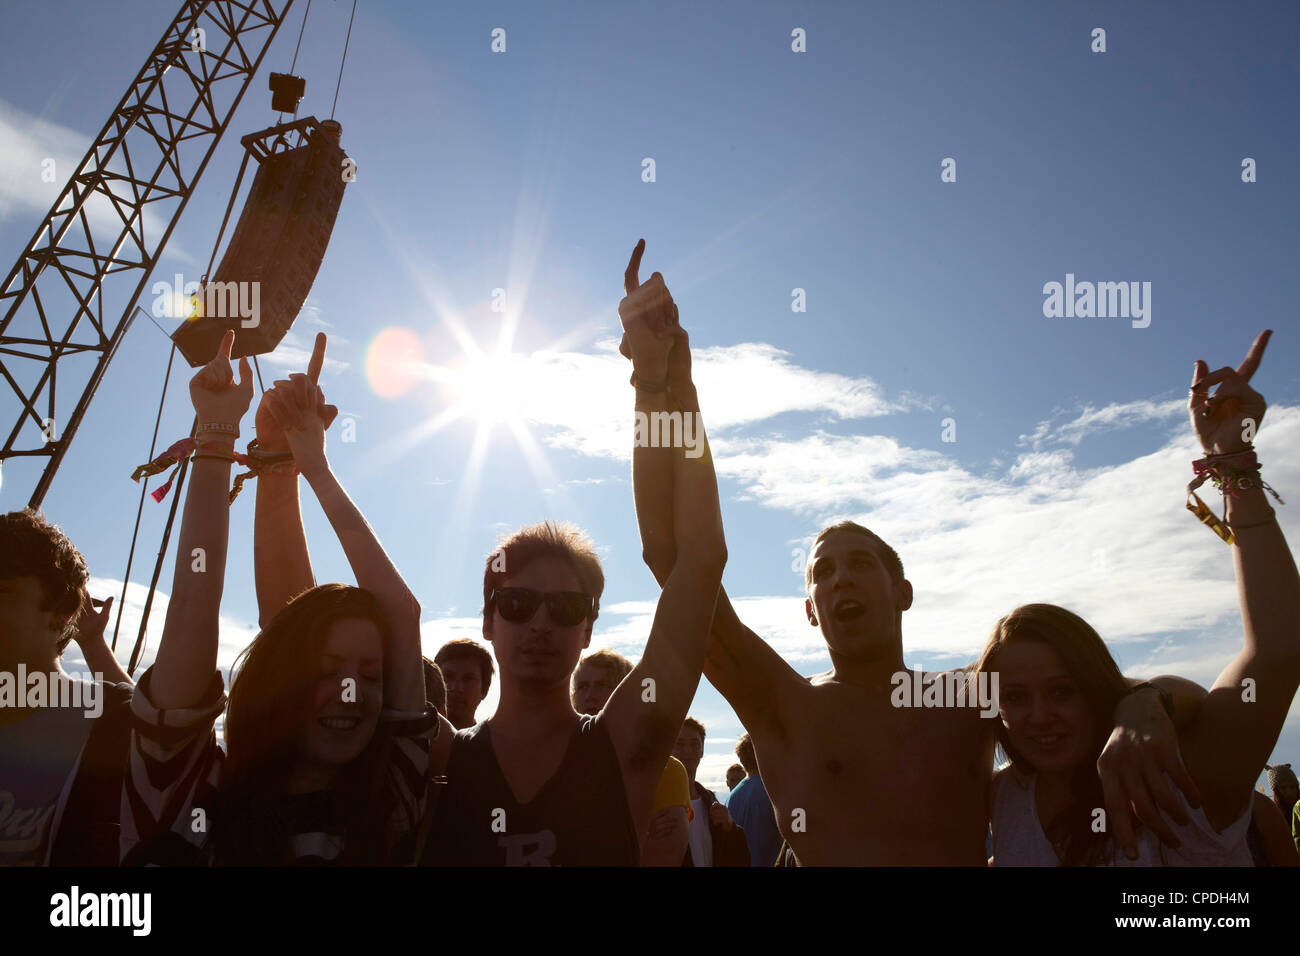 Jóvenes bailando y vitoreando al sol en una fiesta de música Foto de stock